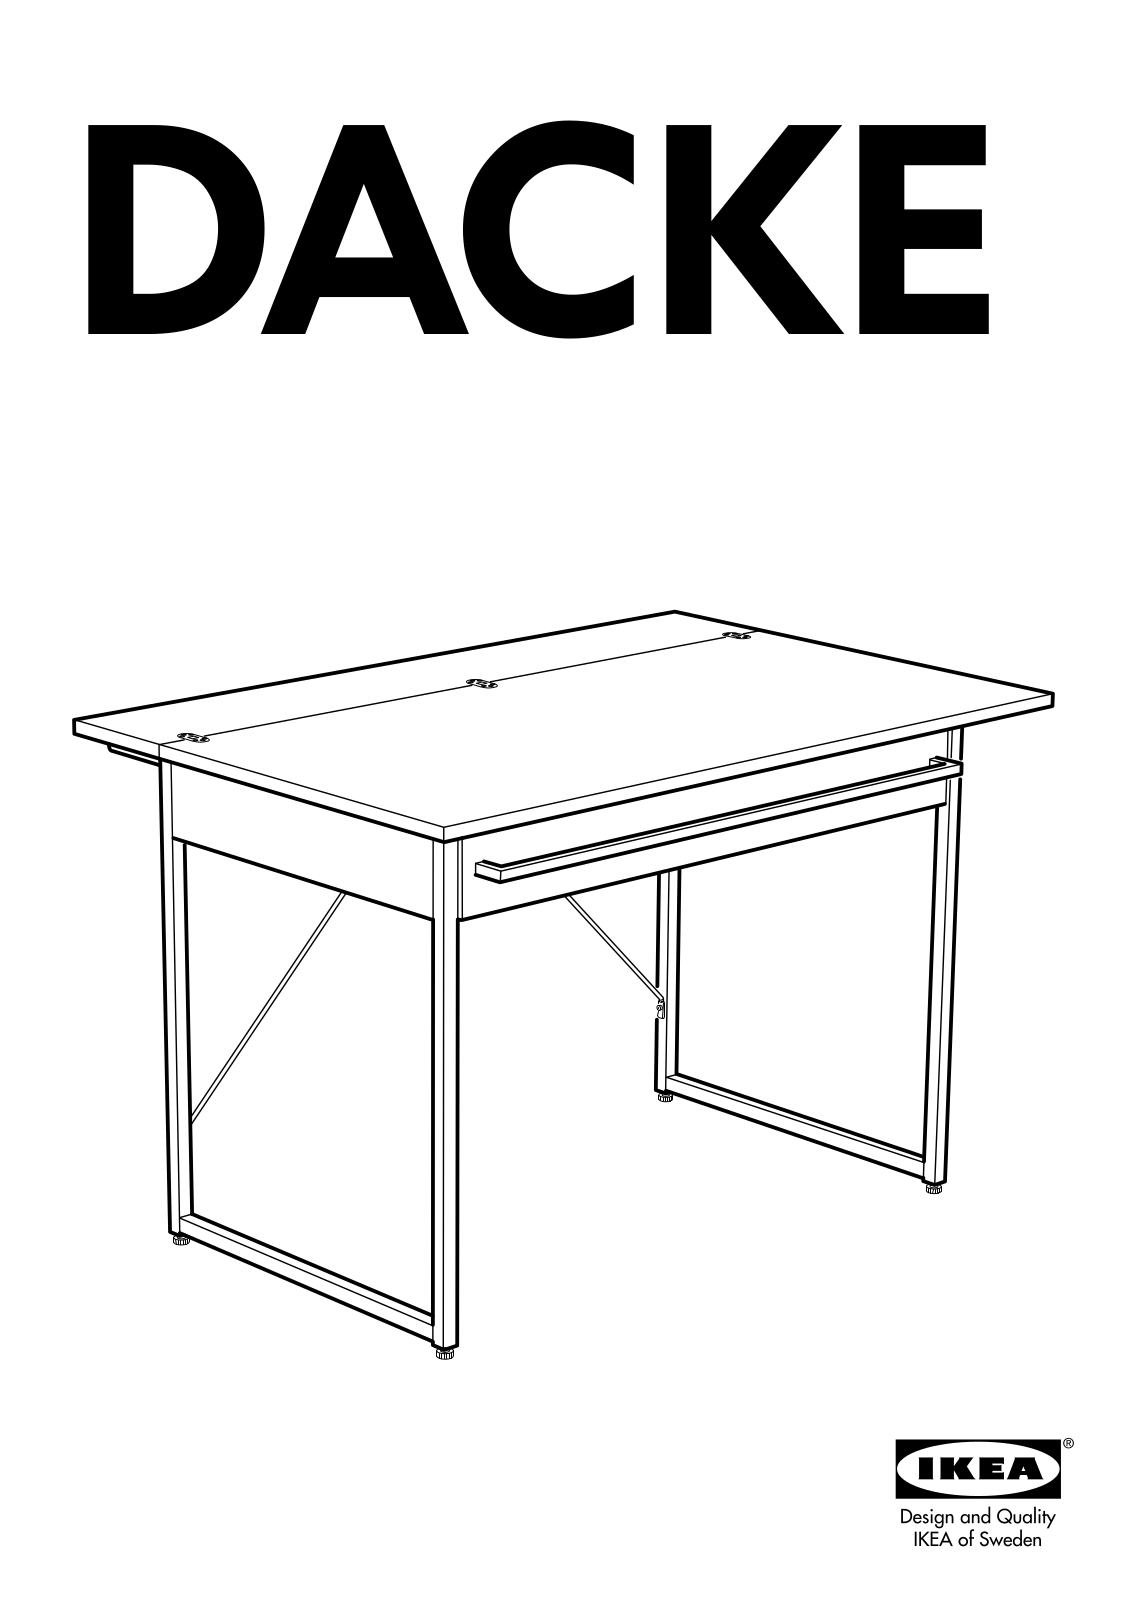 IKEA DACKE KITCHEN ISLAND User Manual